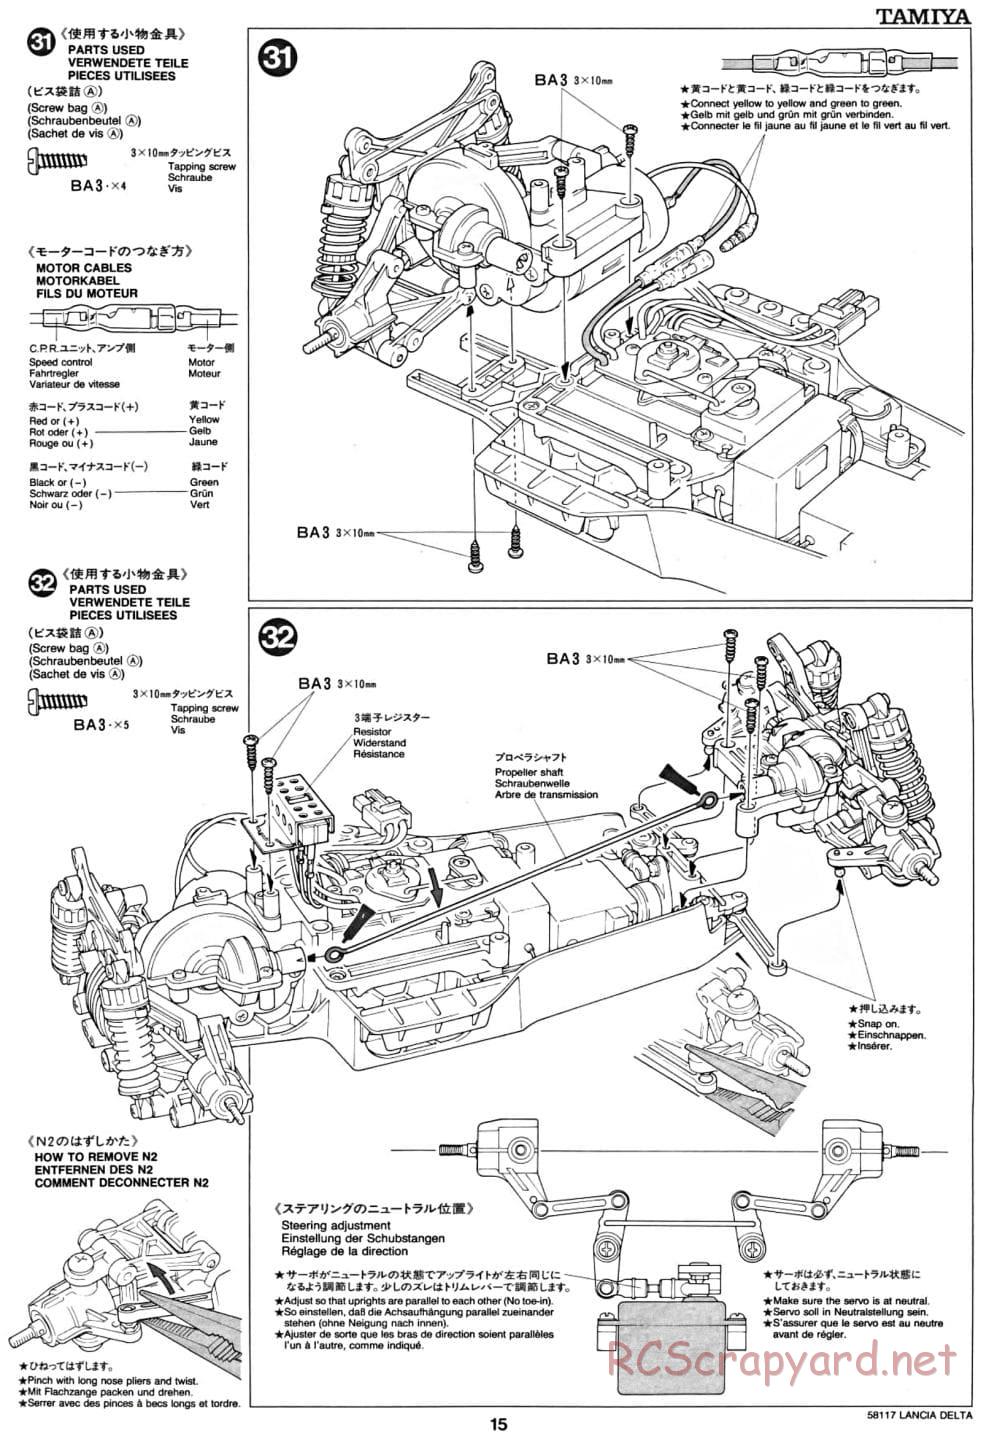 Tamiya - Lancia Delta HF Integrale - TA-01 Chassis - Manual - Page 15